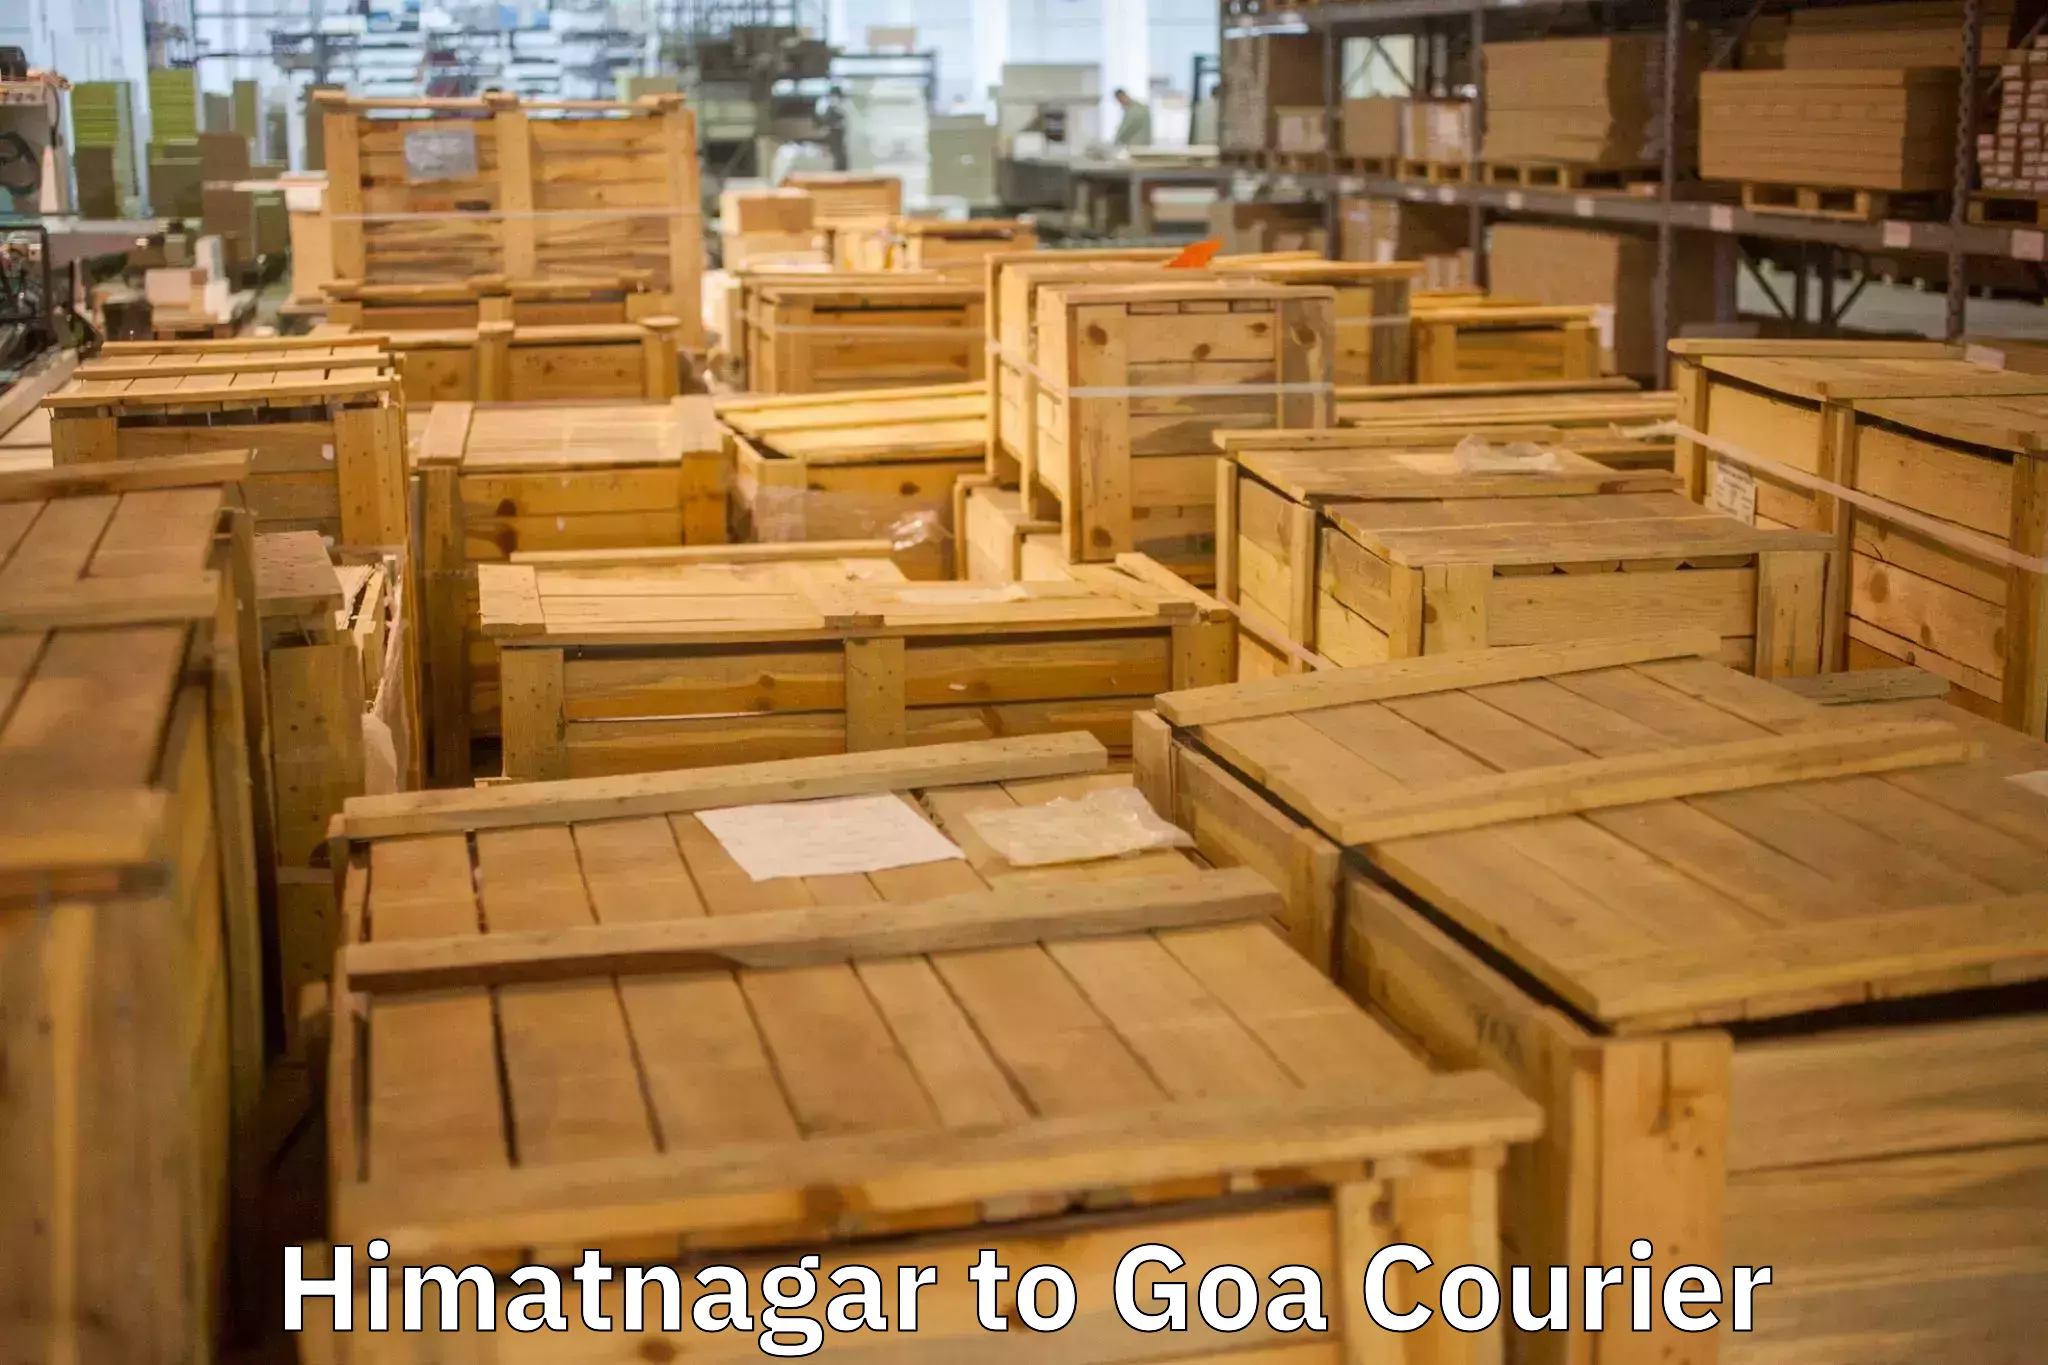 Furniture transport experts Himatnagar to Panjim